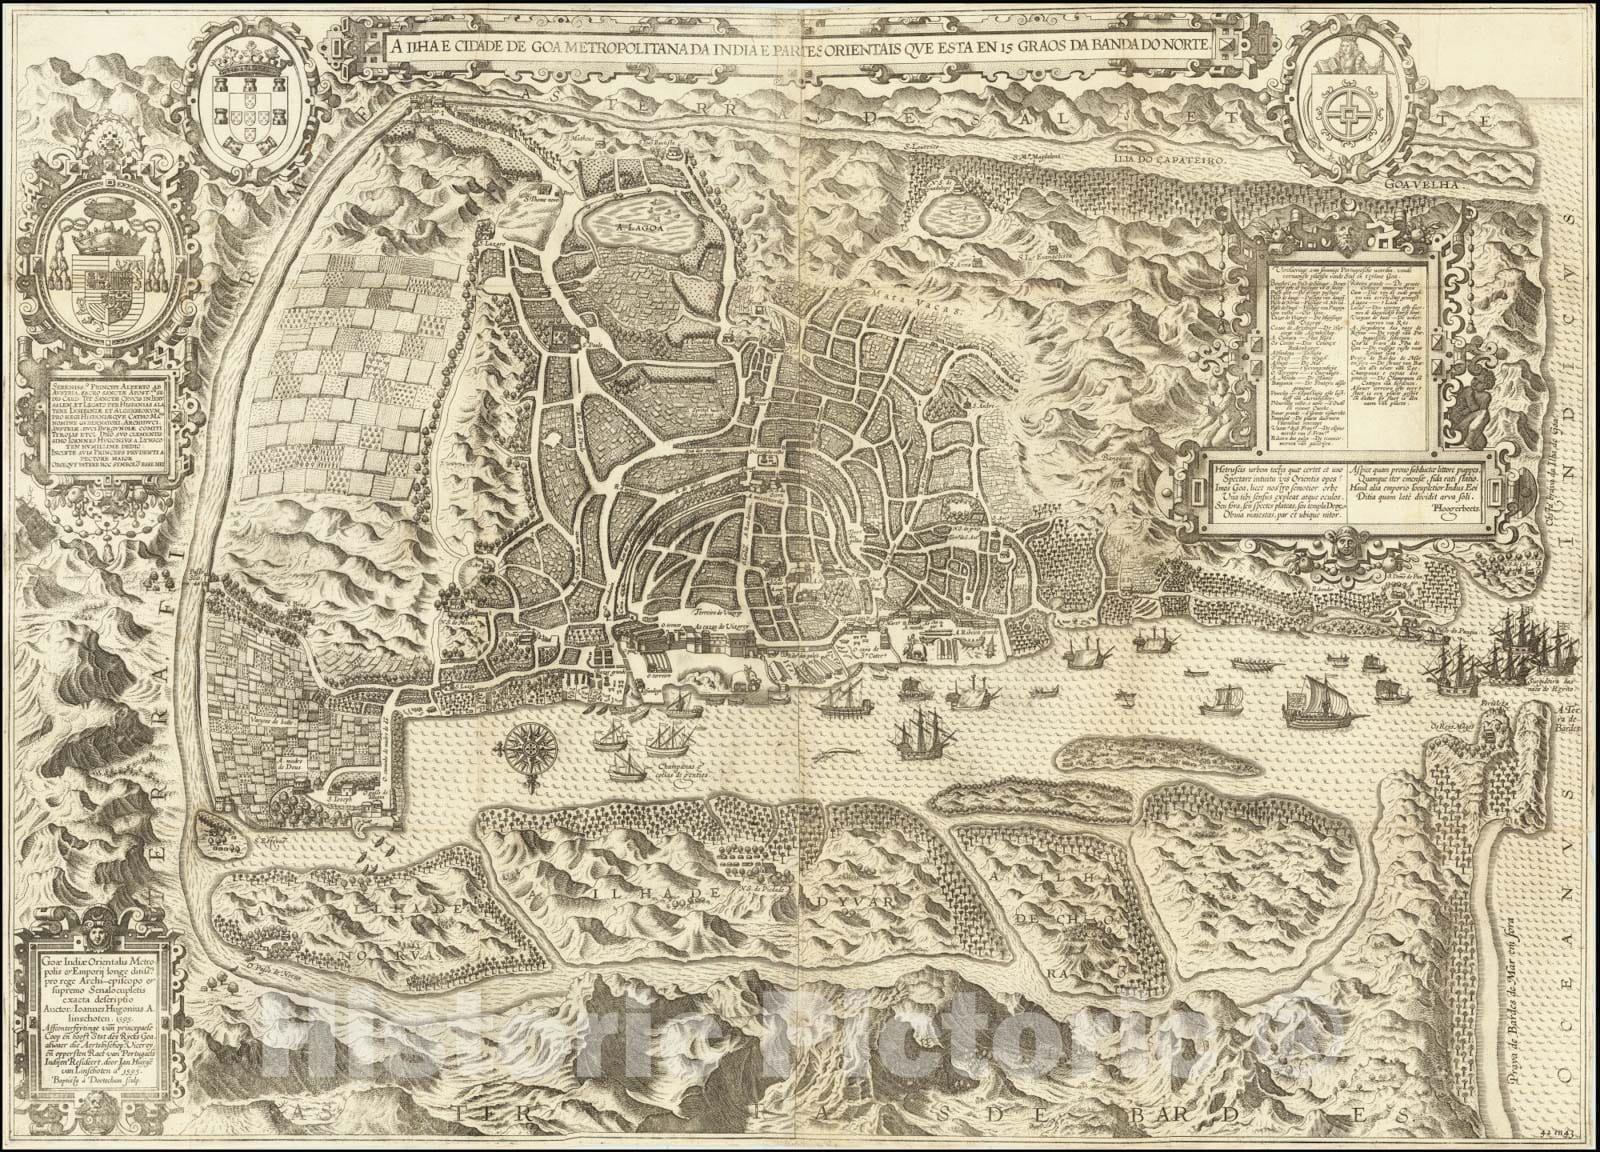 Historic Map : A Ilha e Cidade de Goa Metropolitana da India E Partes Orientais que esta en 15 Graos da Banda da Norte, 1596, Vintage Wall Art